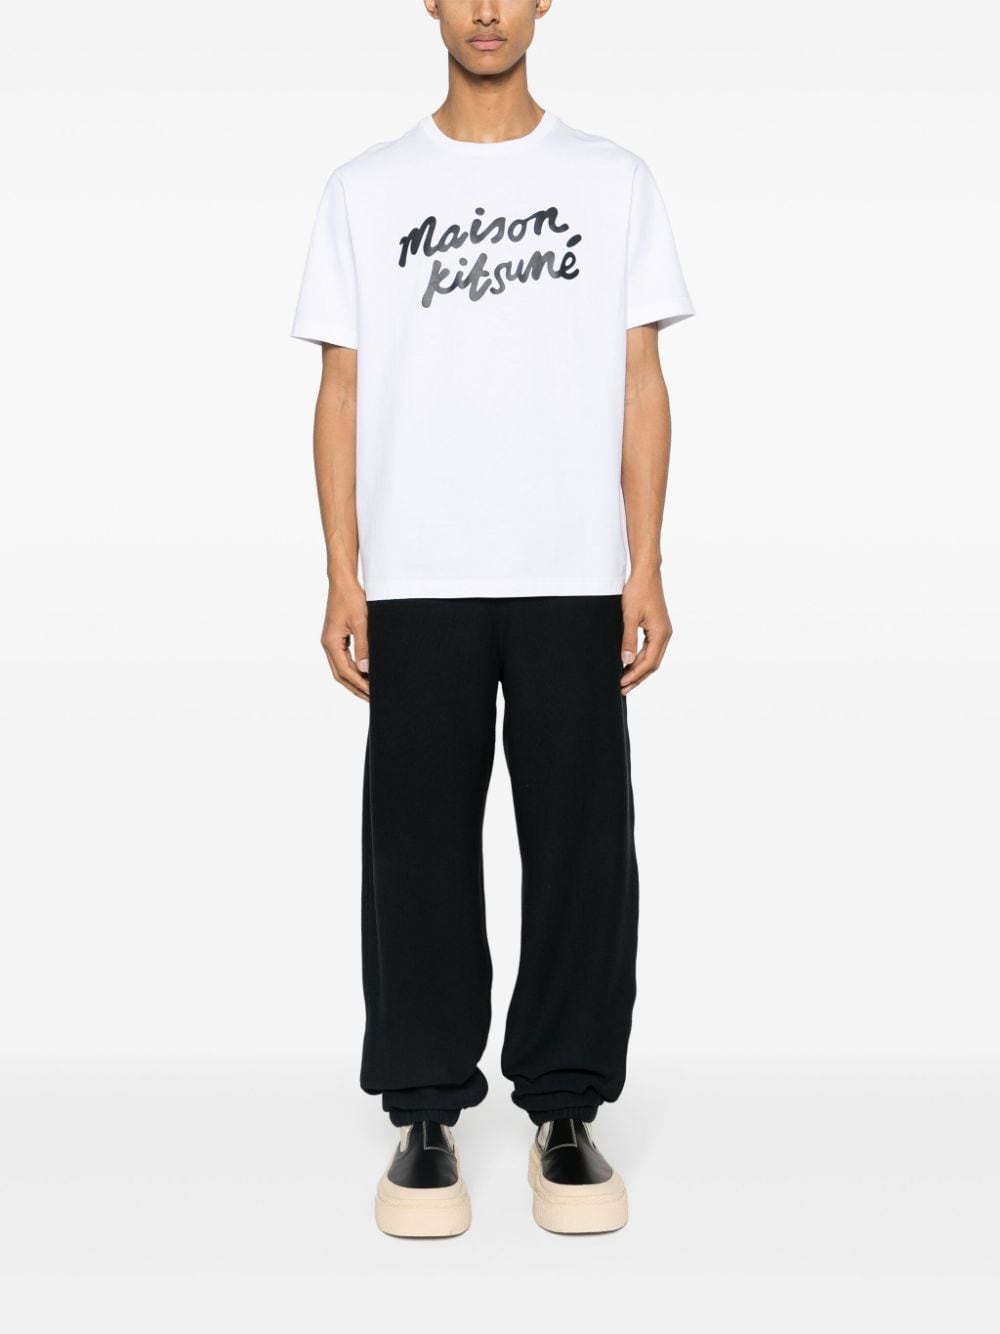 Maison Kitsuné - T-shirt Handwriting Comfort - Lothaire